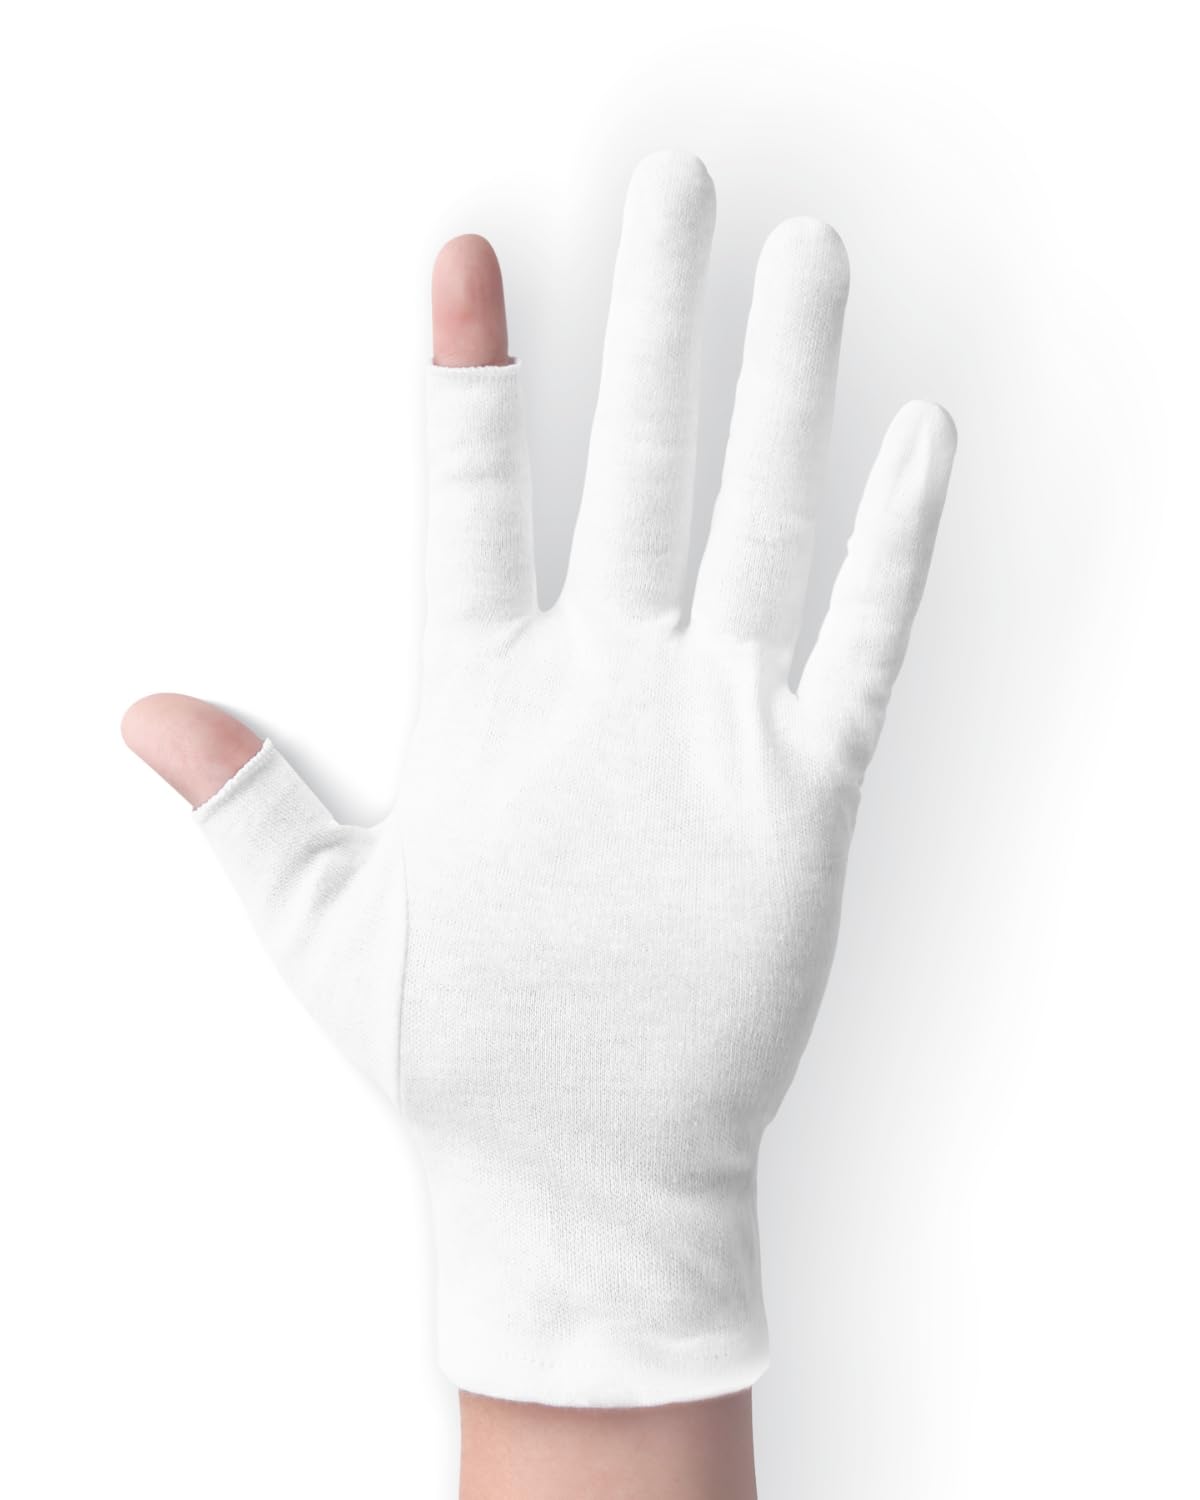 ANSMIO 2 Pairs Cotton Gloves Touchscreen, White Gloves for Dry Hands, Cotton Gloves for Sleeping, Moisturizing Night Gloves, White Gloves 100% Cotton, Size M (2 Pairs)